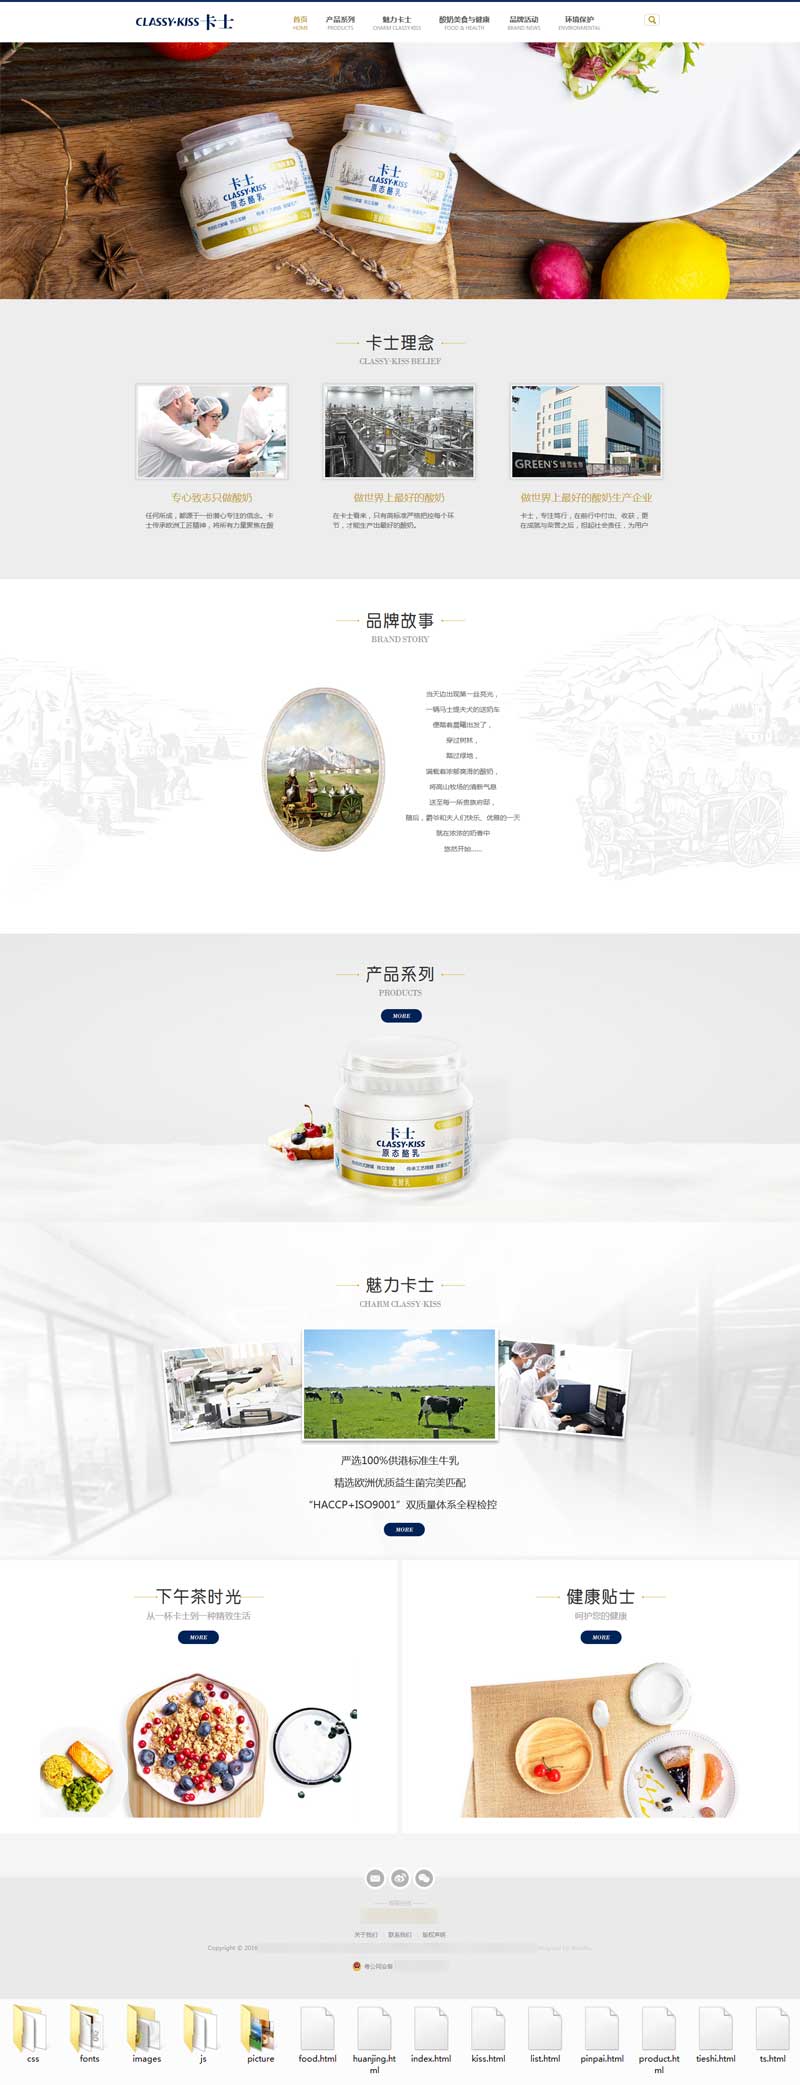 大气的酸奶制品官方网站html模板